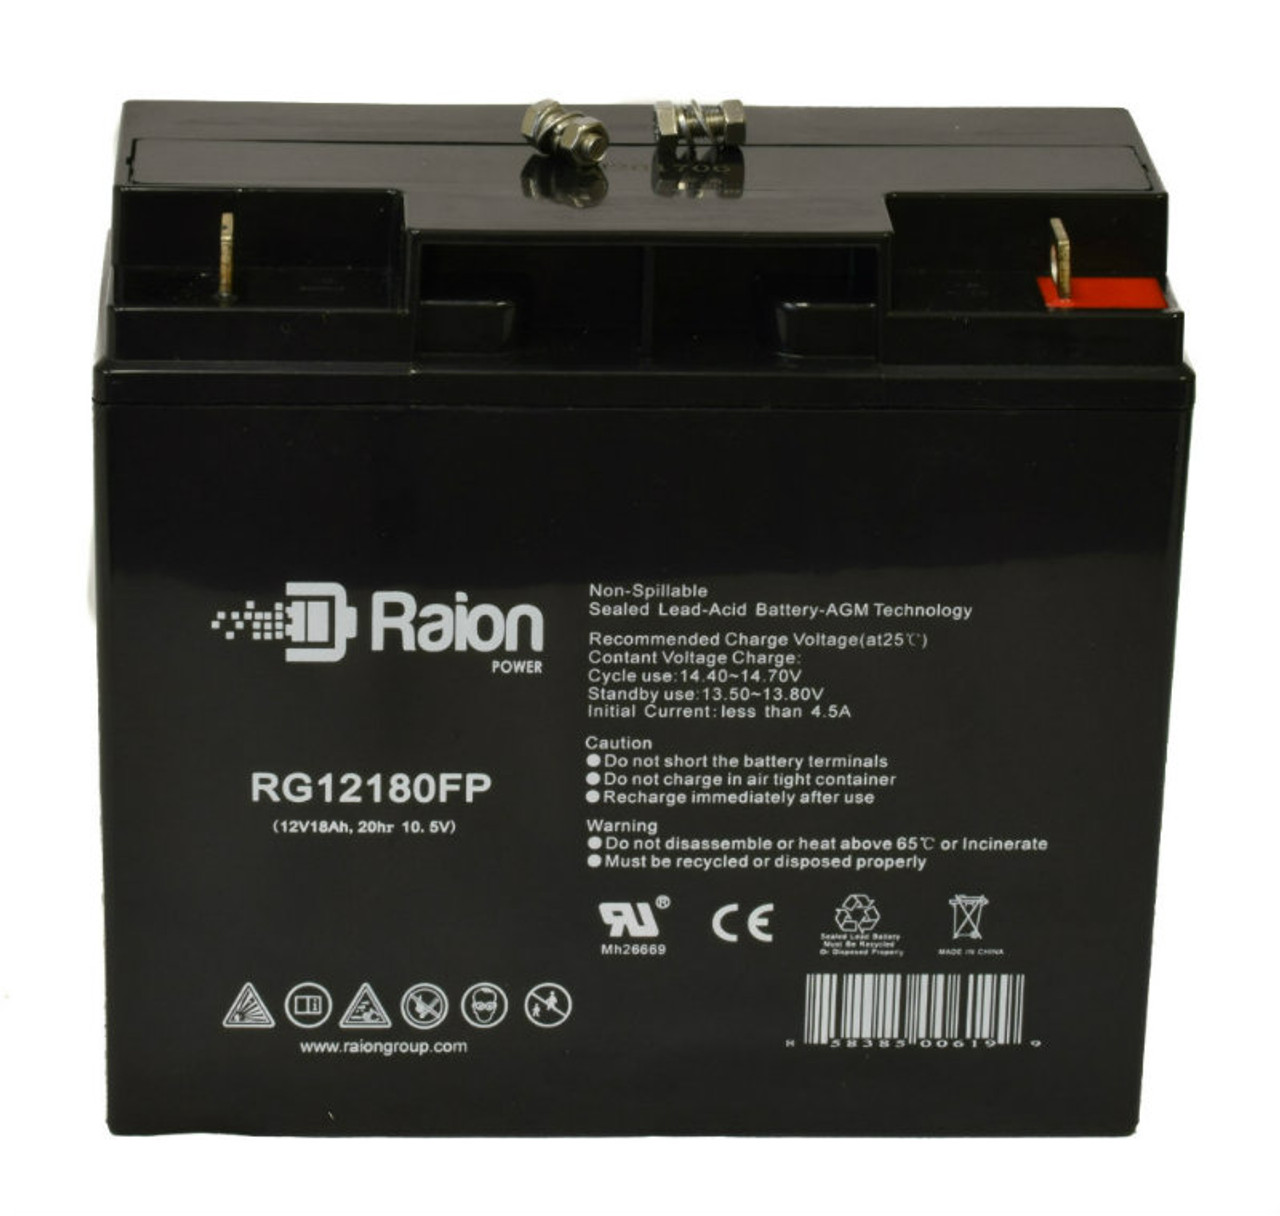 Raion Power RG12180FP 12V 18Ah Lead Acid Battery for Kinghero SJ12V15Ah-D